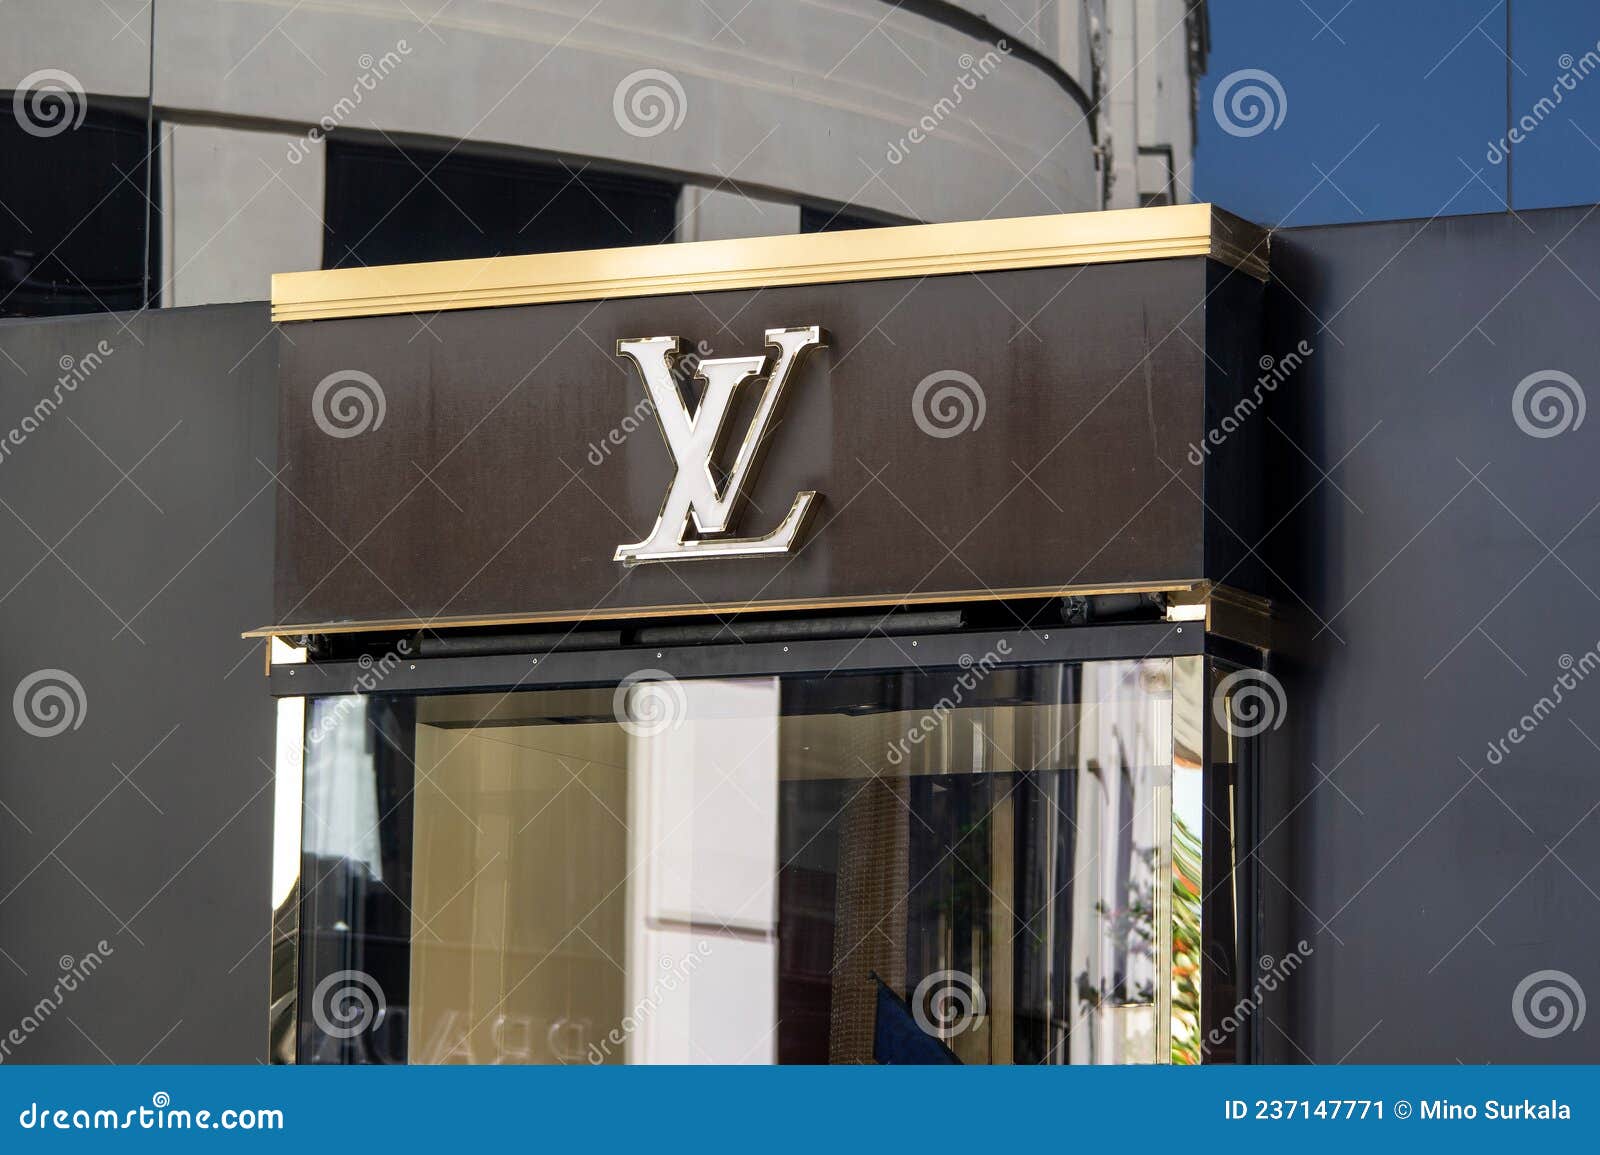 129 Vuitton Storefront Stock Photos - Free & Royalty-Free Stock